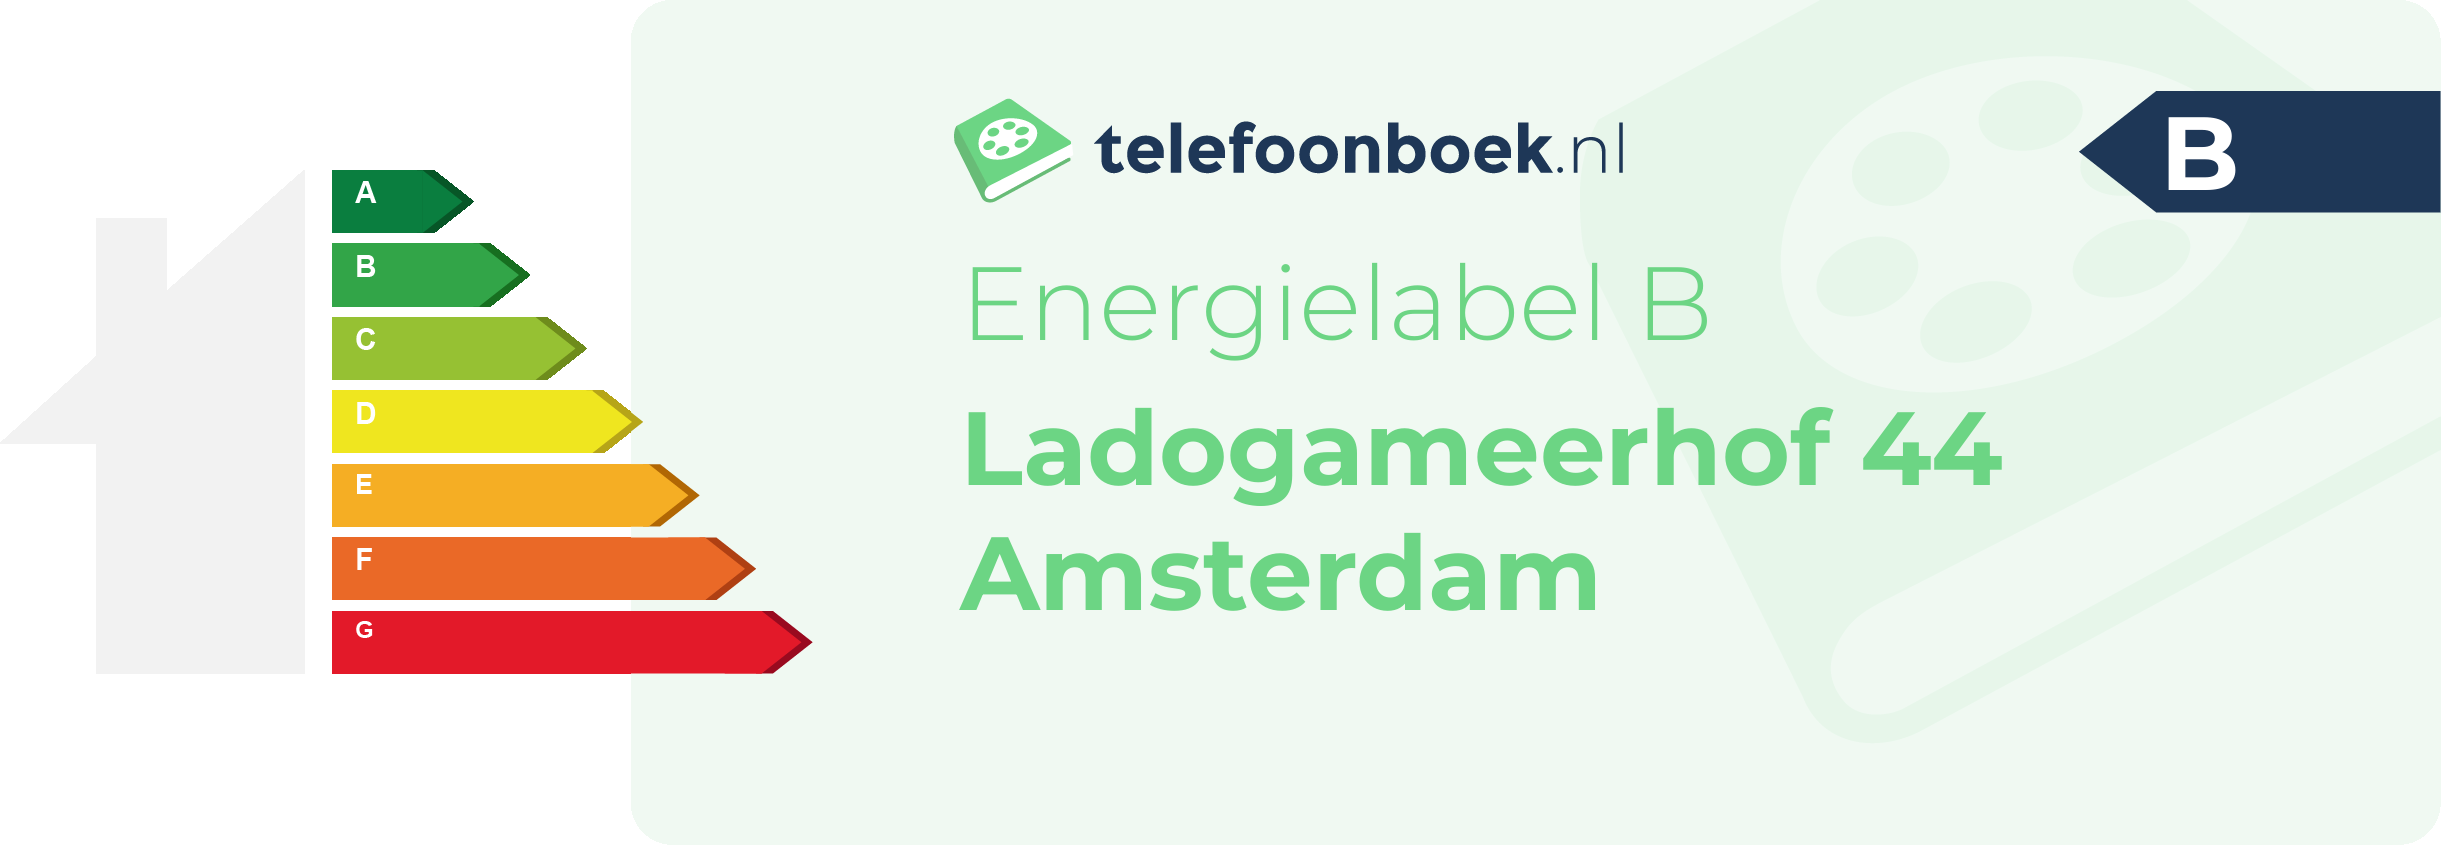 Energielabel Ladogameerhof 44 Amsterdam